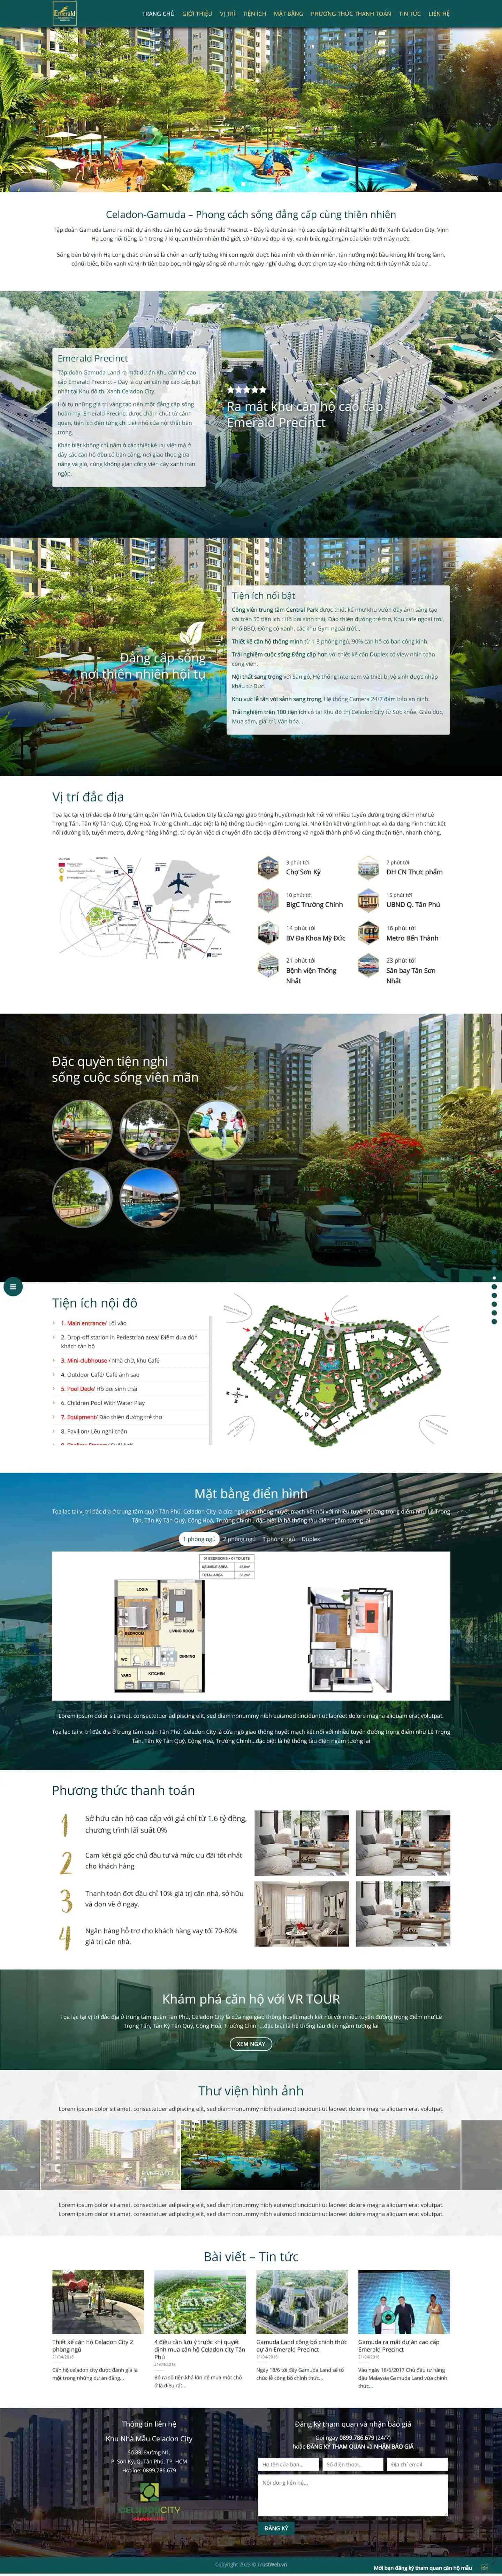 Theme bất động sản mẫu số 10 – Dự án Celadon Gamuda 2